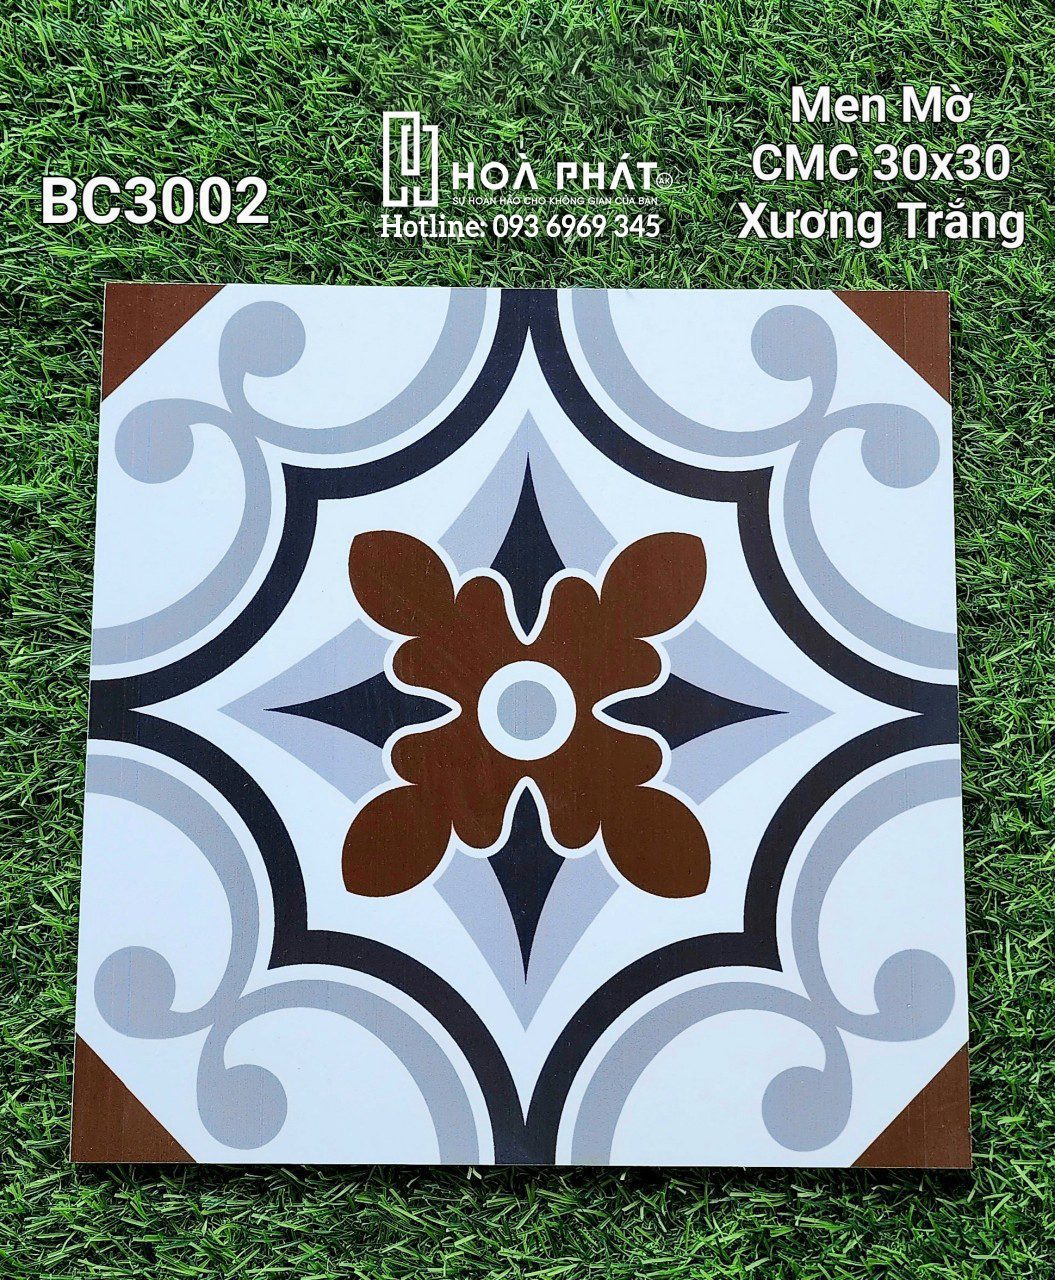 Gạch bông trang trí 30x30 CMC BC3002 - Gạch men Hoà Phát